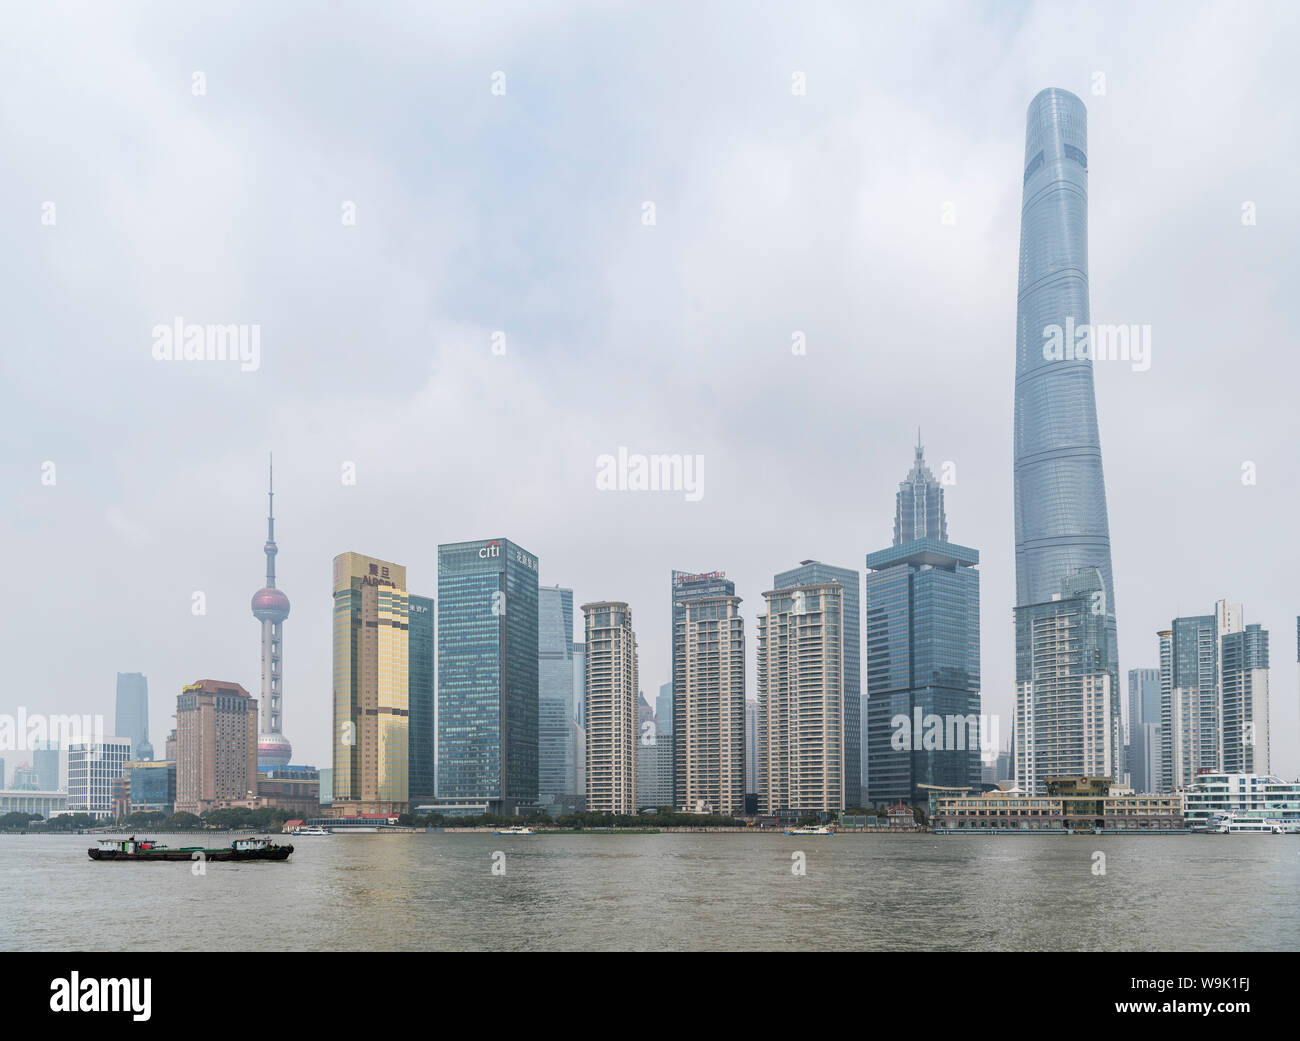 Distrito Financiero de Pudong y el río Huangpu, visto desde el Bund, Shanghai, China. La torre de Shanghai está a la derecha y a la izquierda de la torre Oriental Pearl. Foto de stock